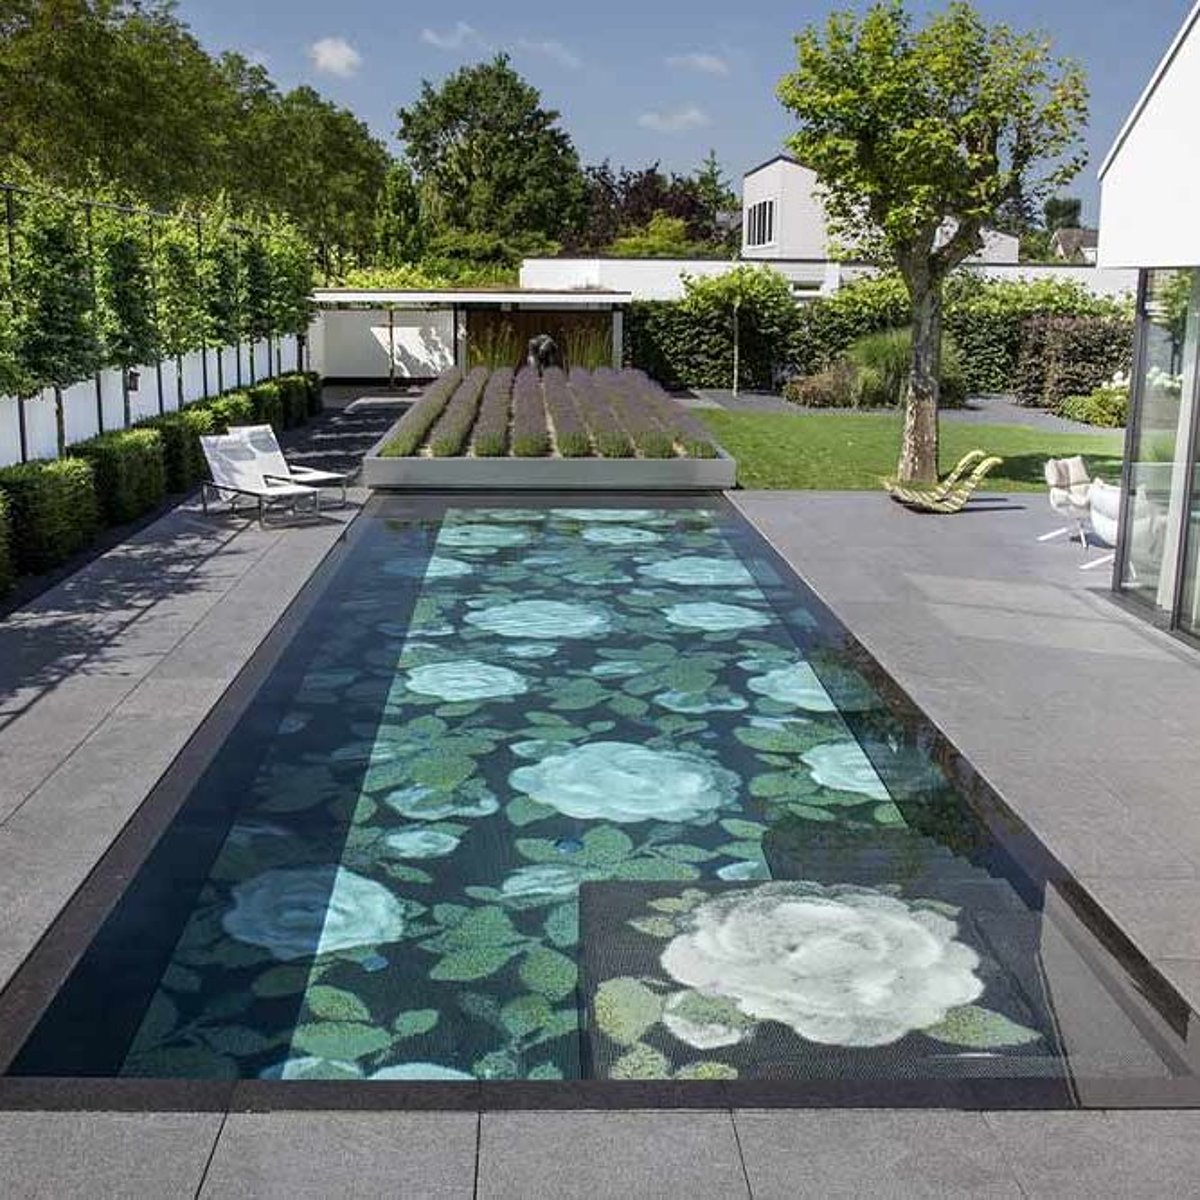 Ein aufwändig gestalteter Terrassen-Pool mit Blumenmosaik und fahrbarem begrünten Deck zur Abdeckung.